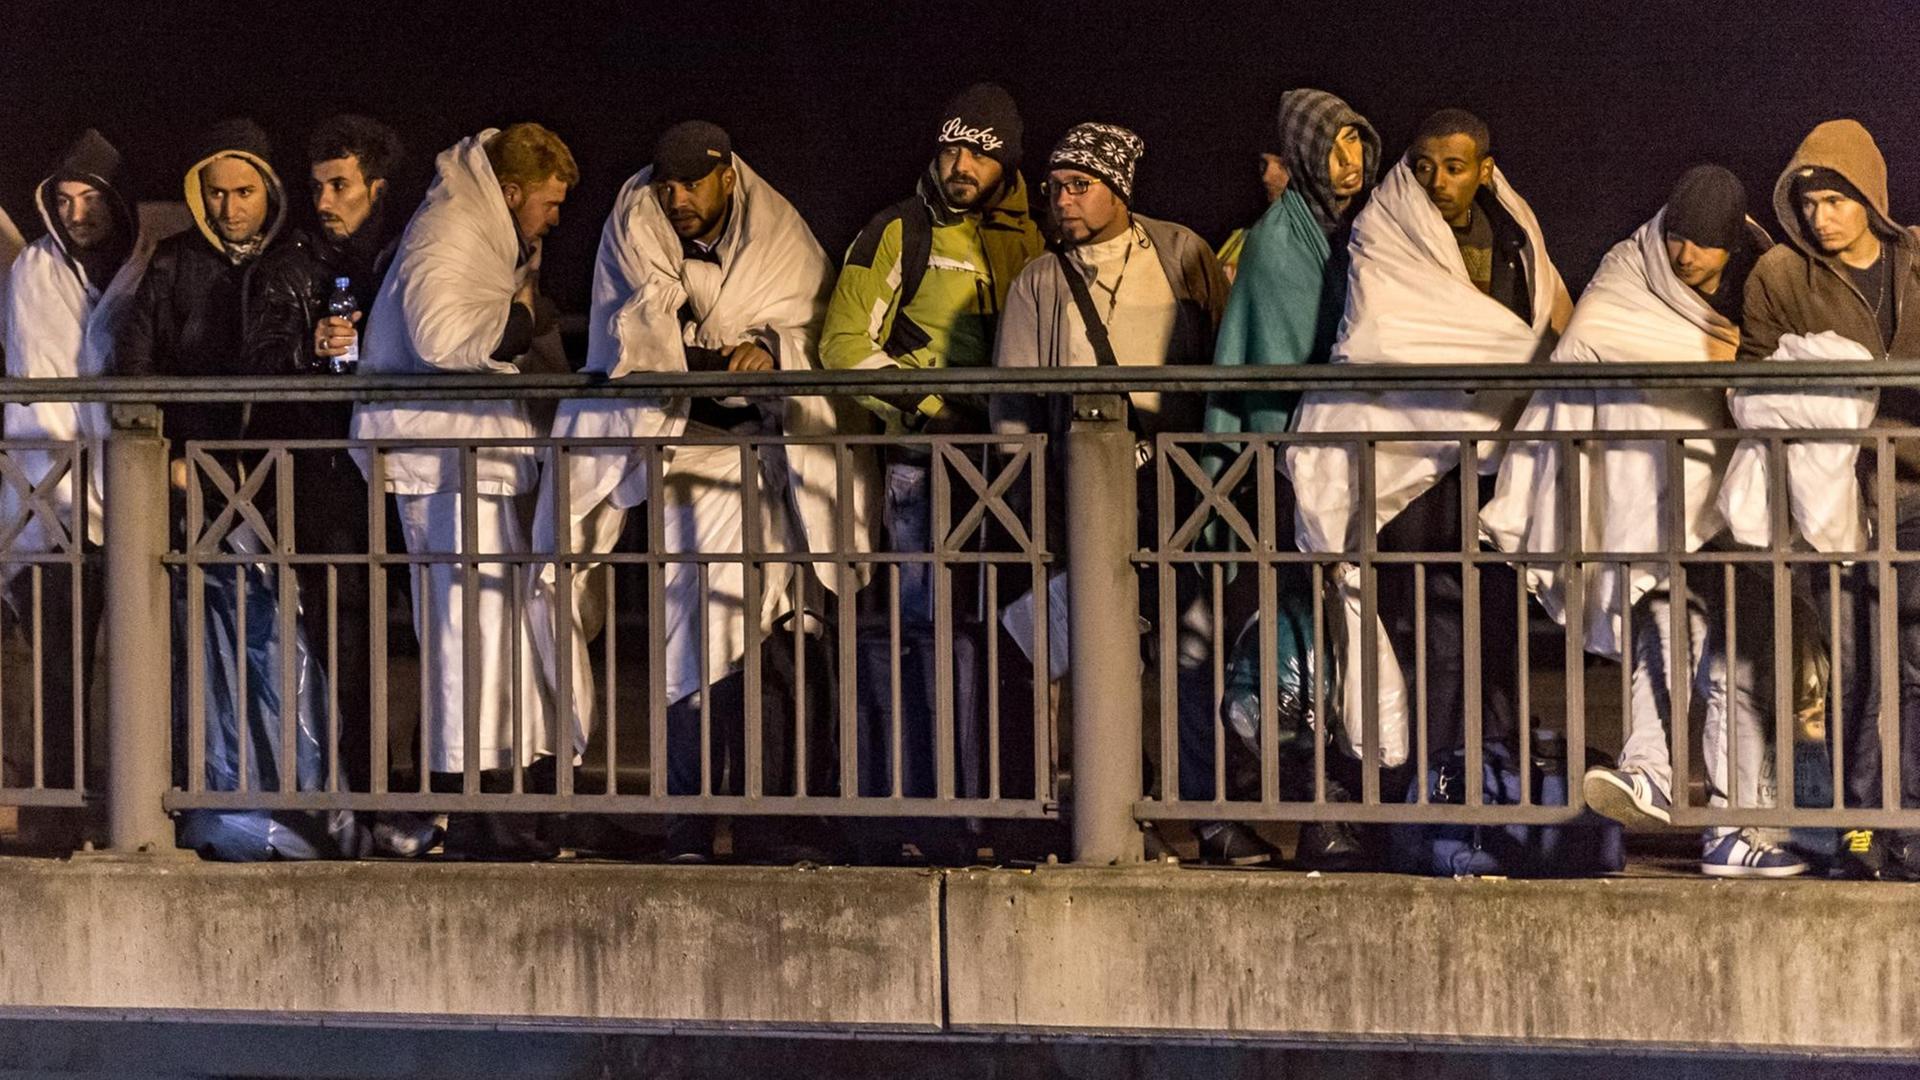 Flüchtlinge stehen nachts in Decken gehüllt auf einer Brücke.